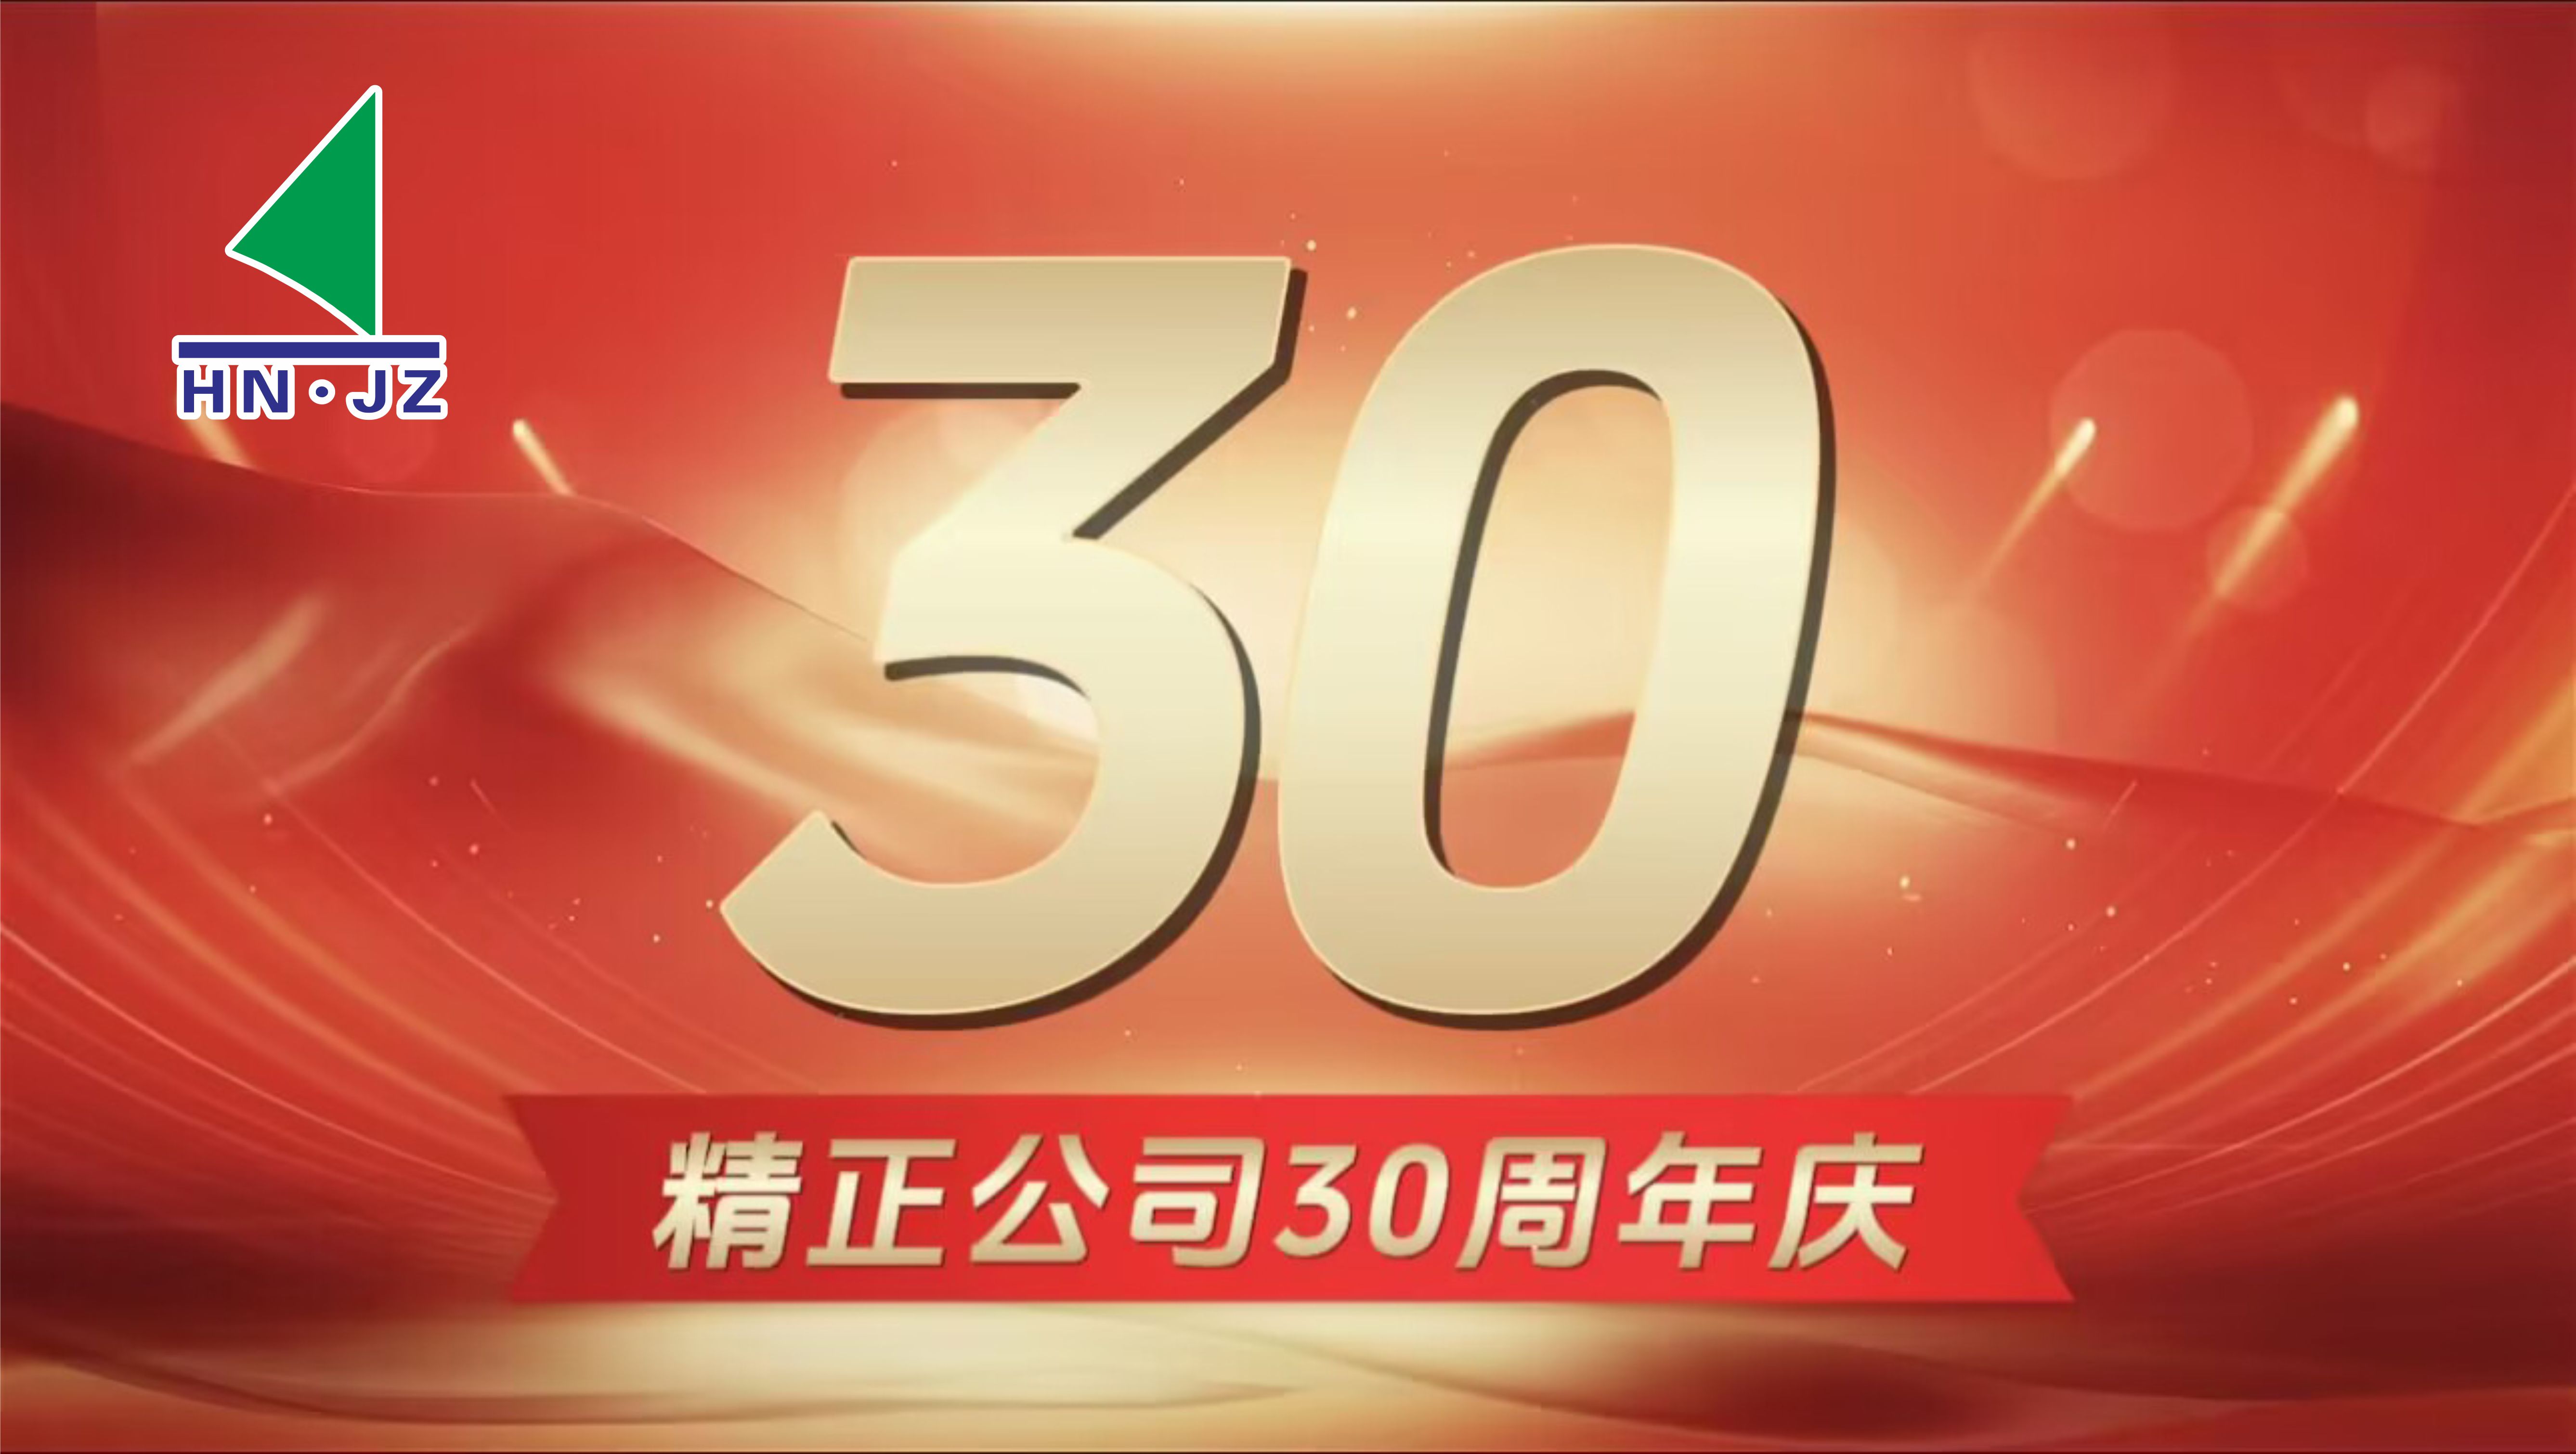 湖南yd2333云顶电子游戏设备30周年庆典